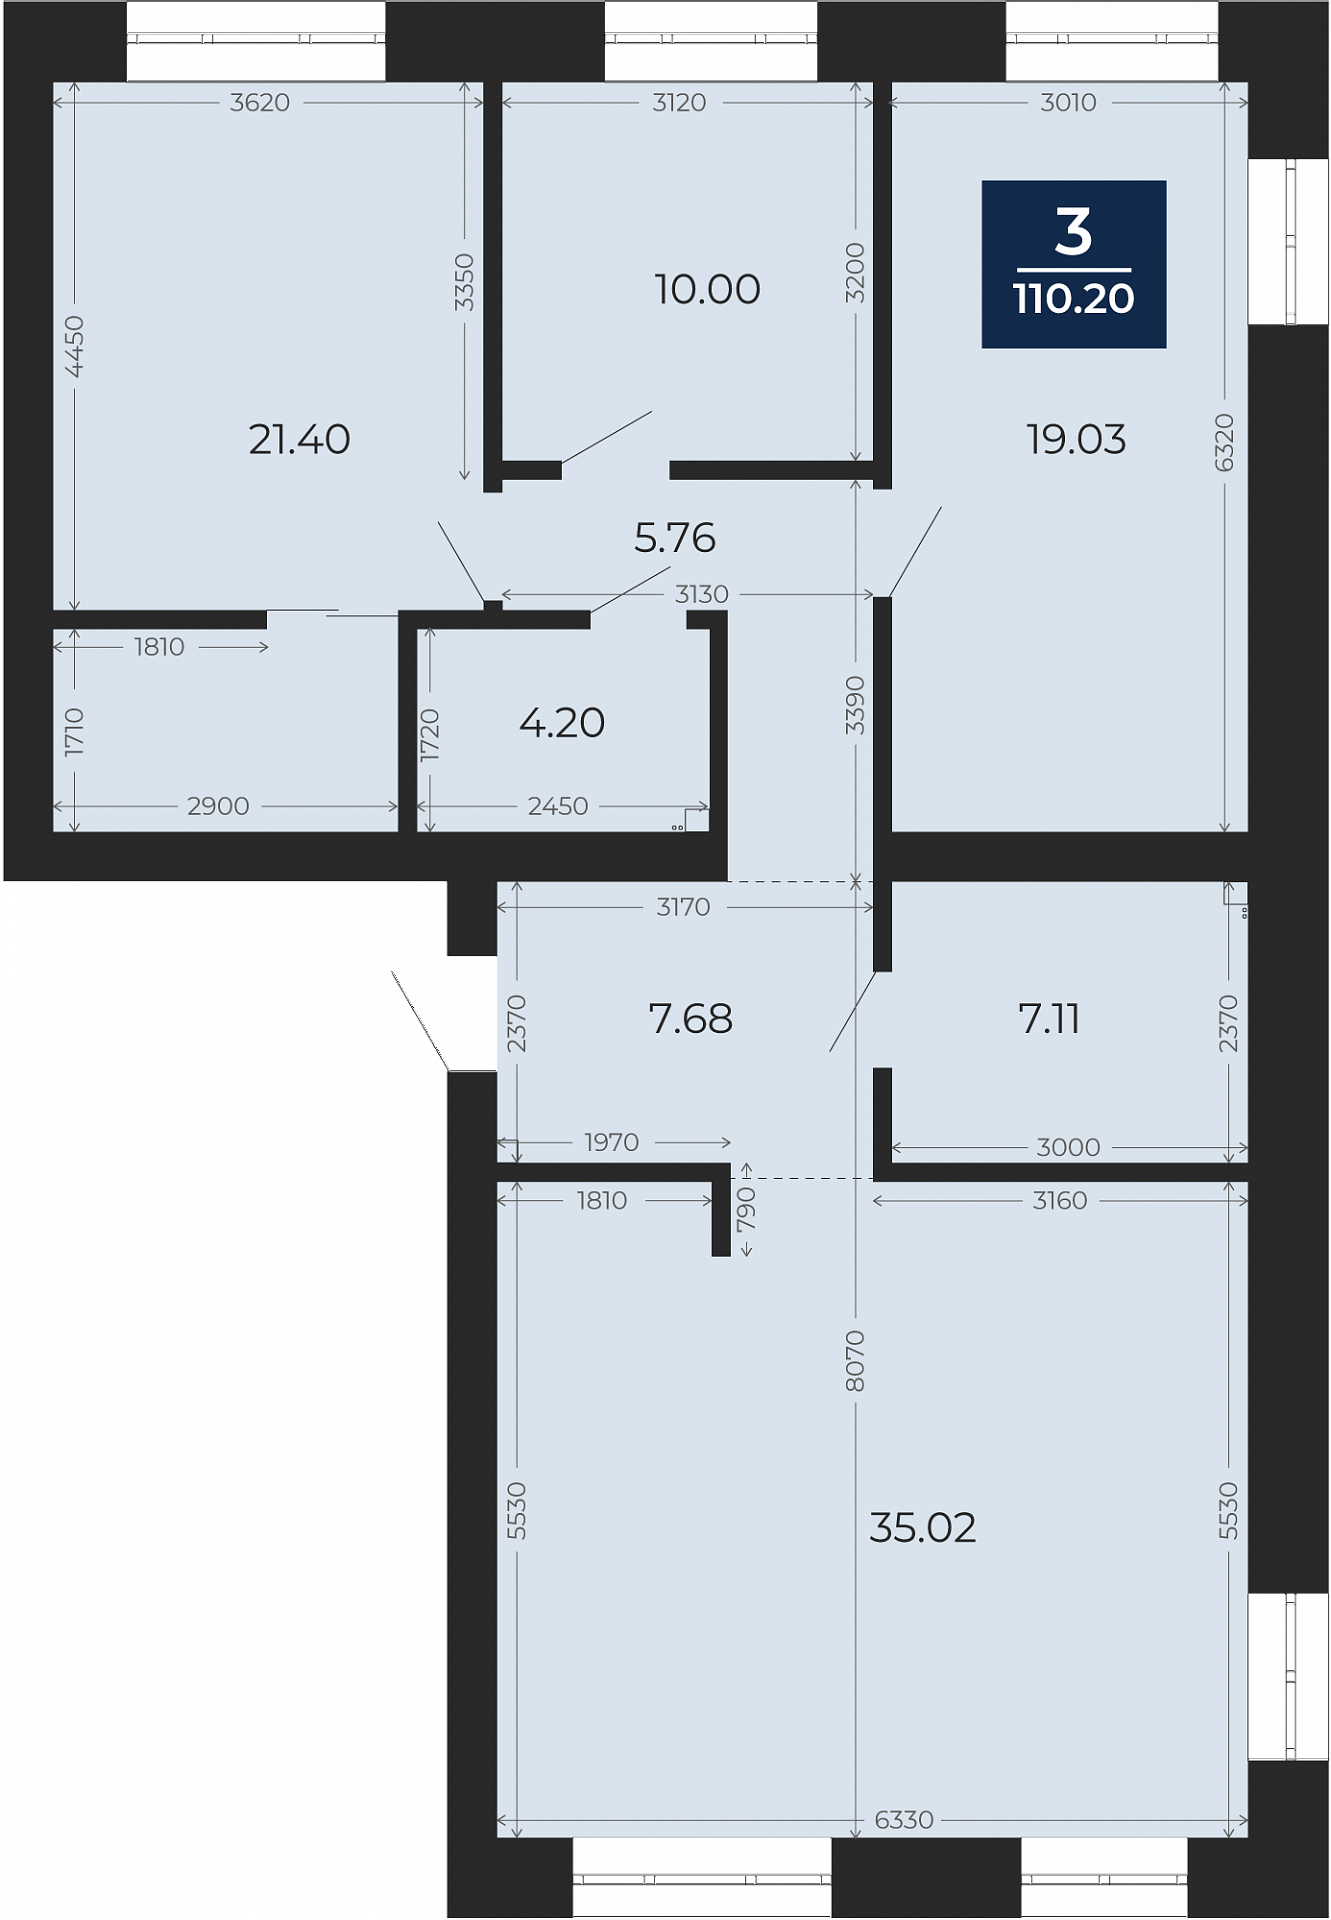 Квартира № 48, 3-комнатная, 110.2 кв. м, 8 этаж